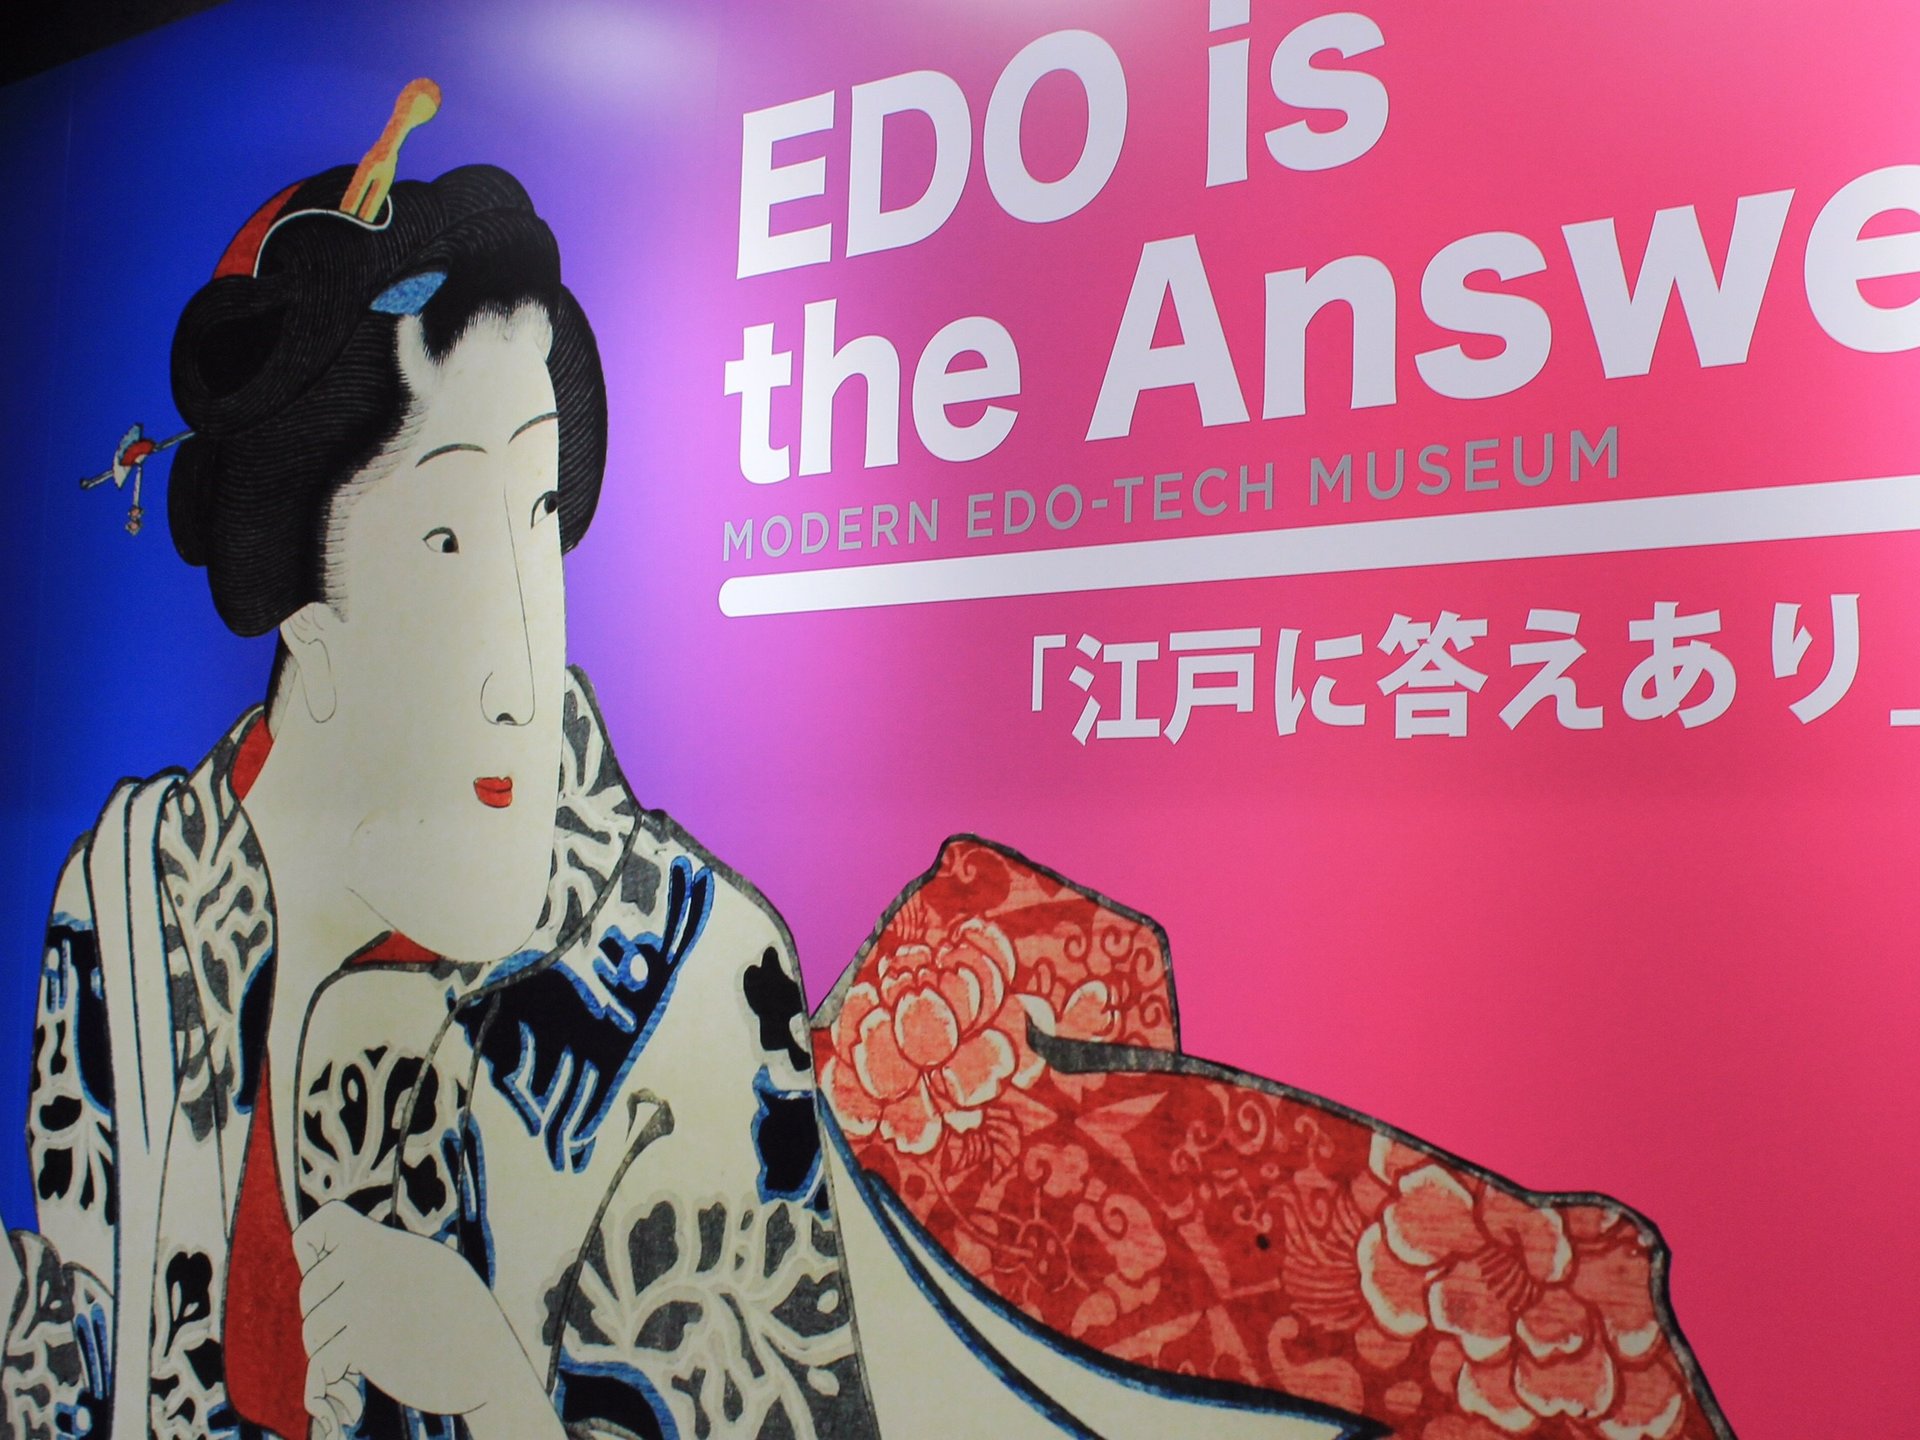 【江戸生活文化伝承館】EDO IS THE ANSWER！江戸～現代に受け継がれる職人の「匠」の技。